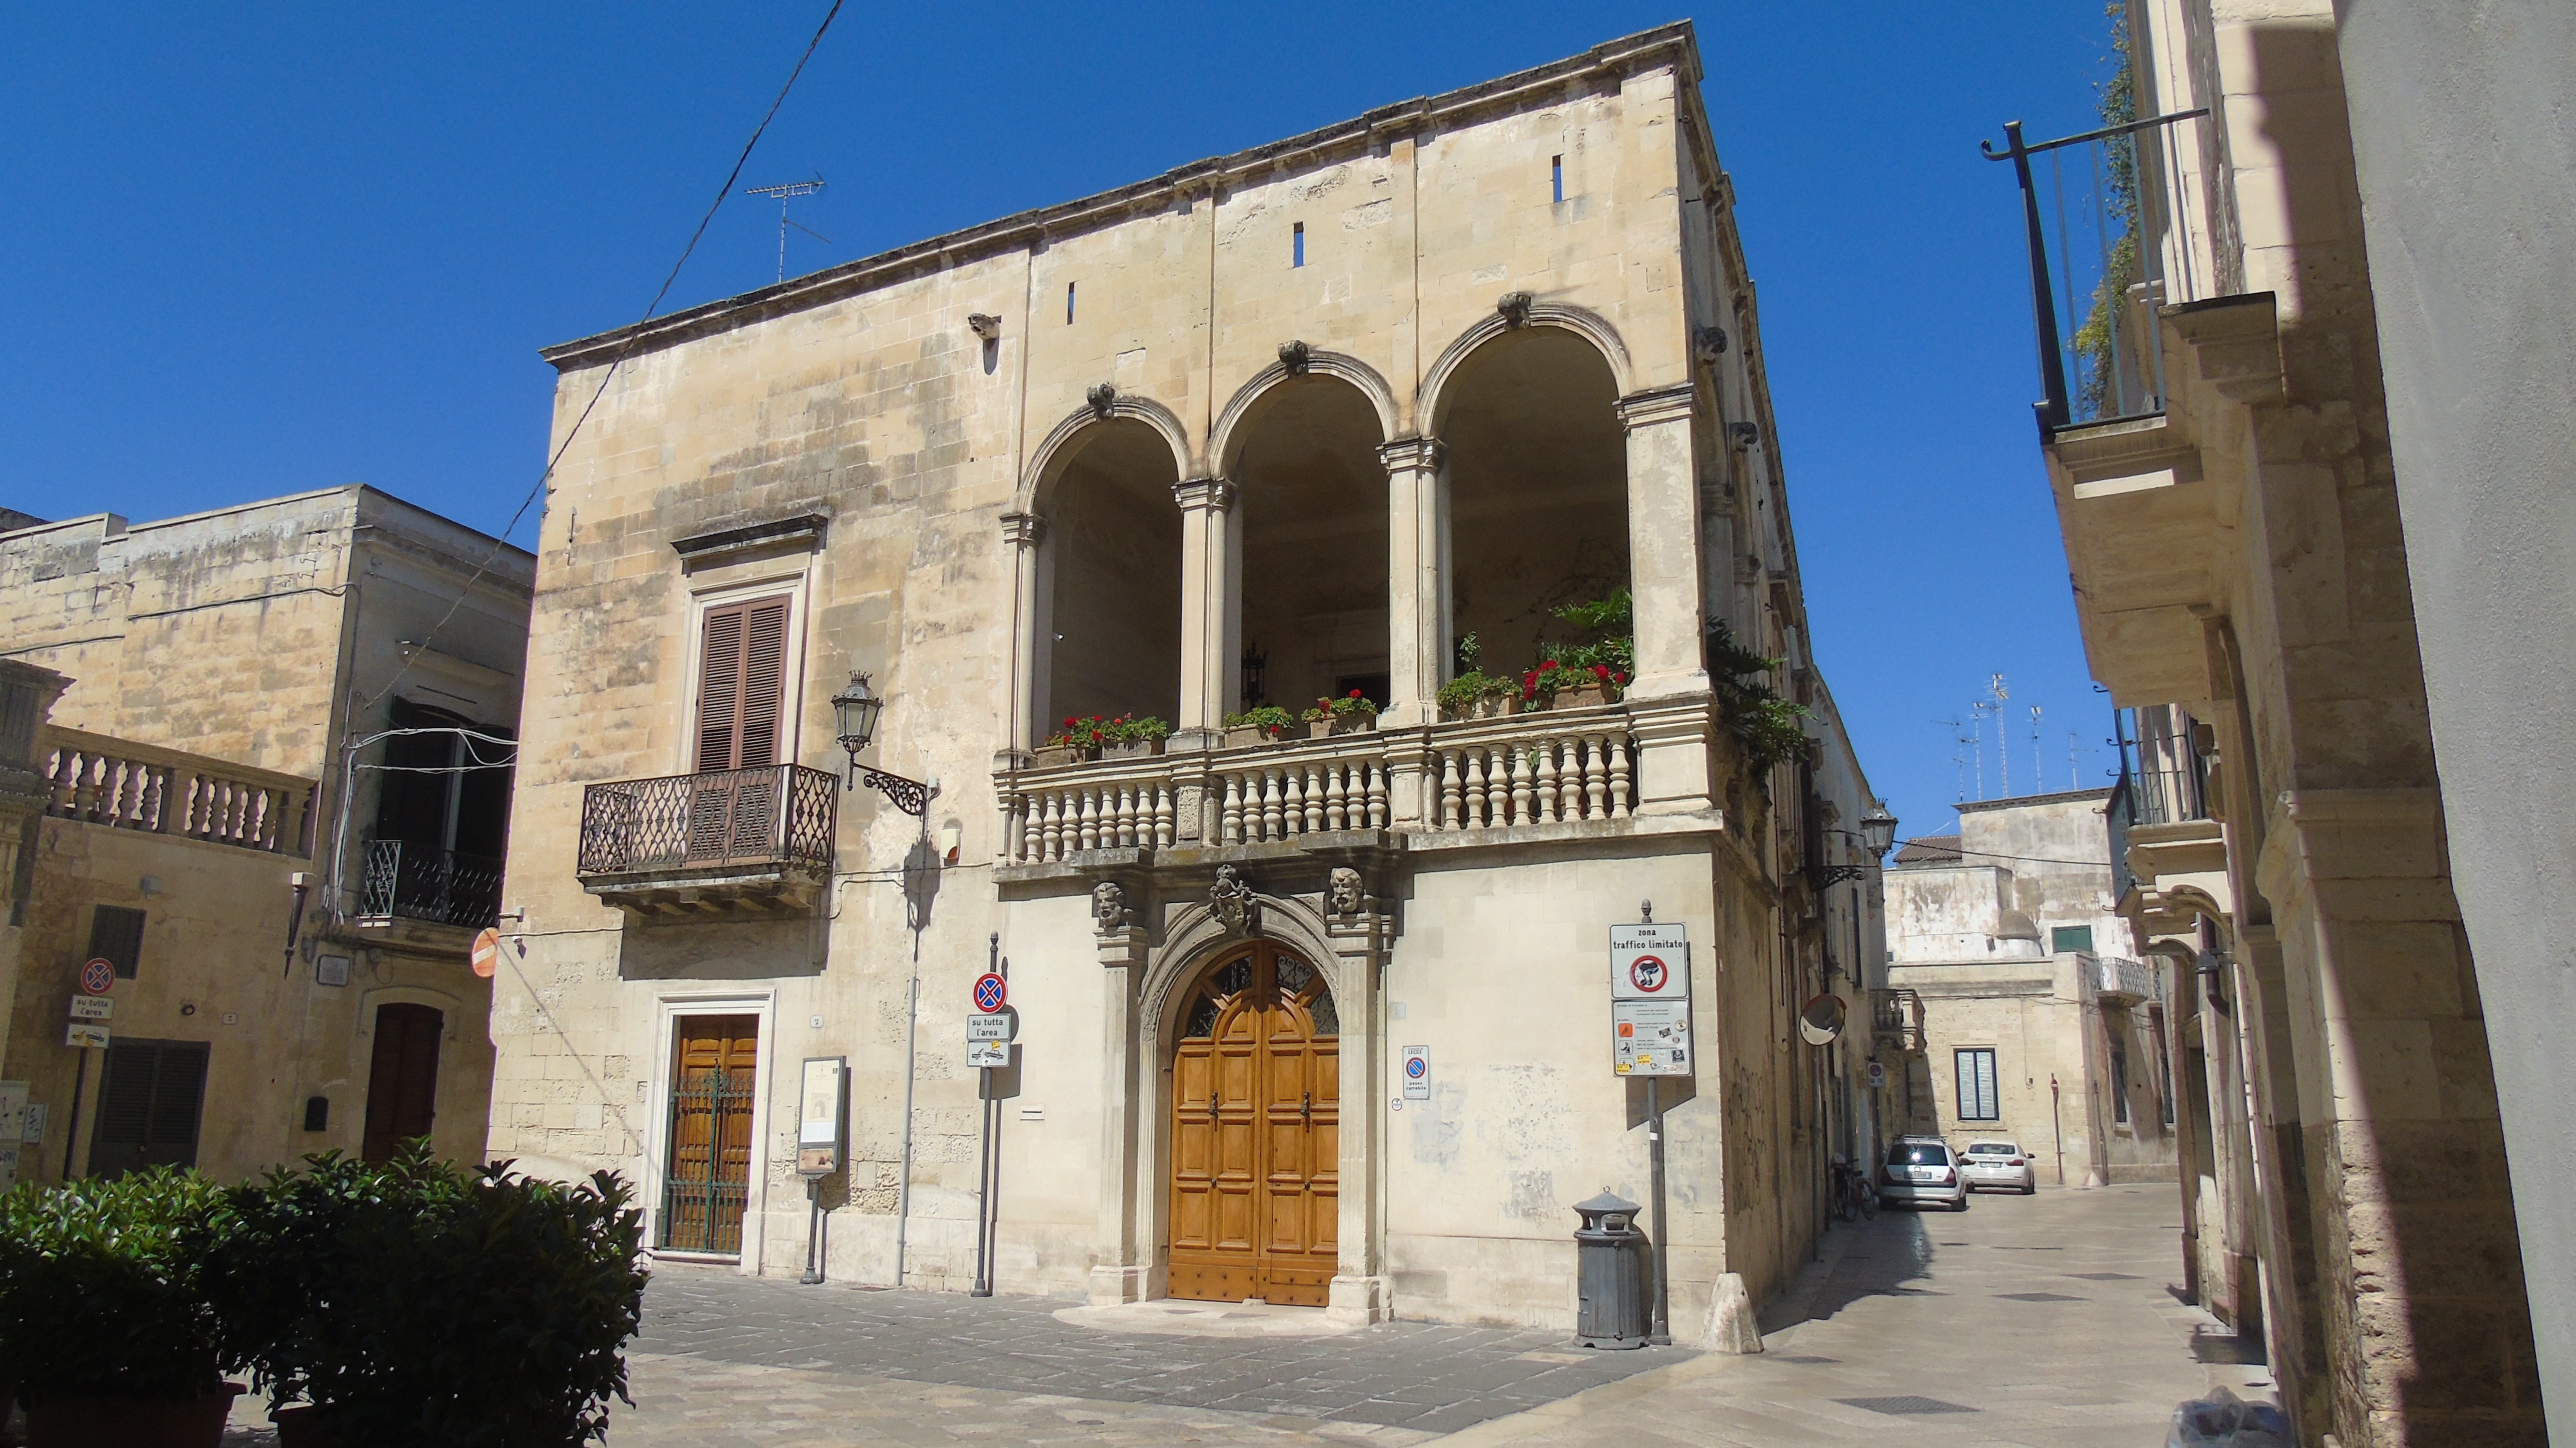 Palazzo Costantini-Losavio (palazzo) - Lecce (LE)  (XVII)